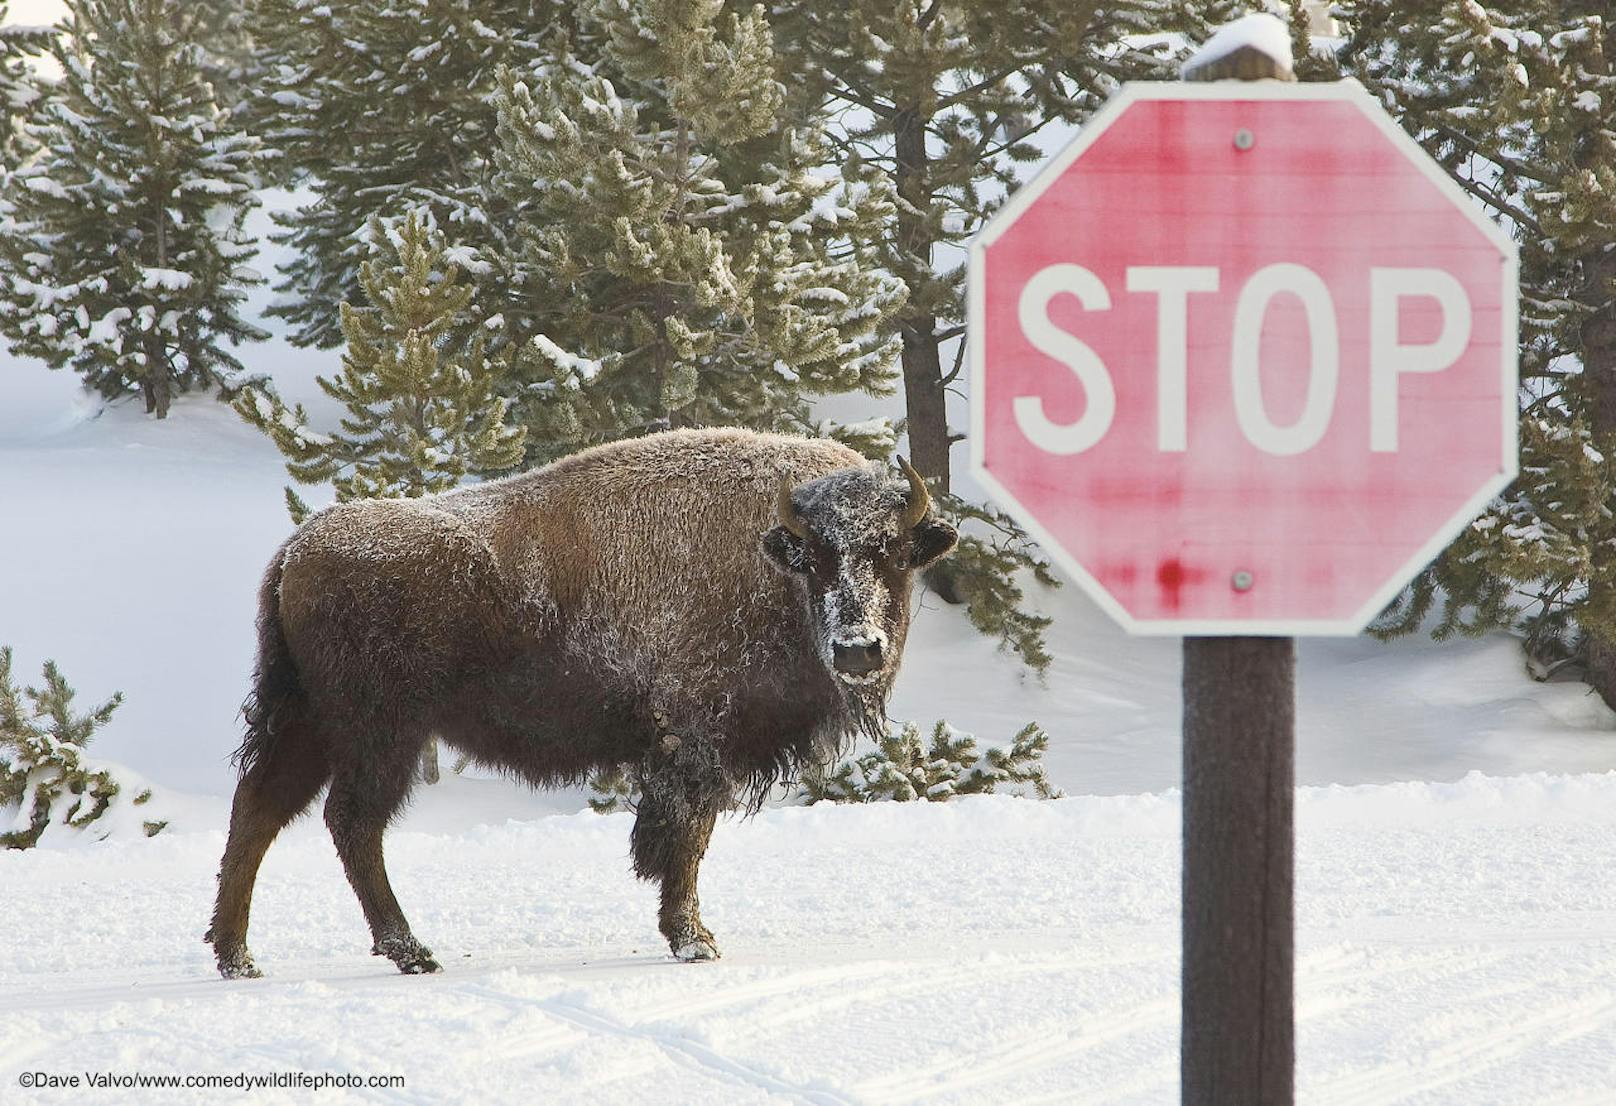 <b>Das Bison blieb stehen und schaute nach, ob ich auch stehen bleibe</b>, erzählt der Fotograf anschließend. 

"I did Stop" von Dave Valvo
Ort: Yellowstone